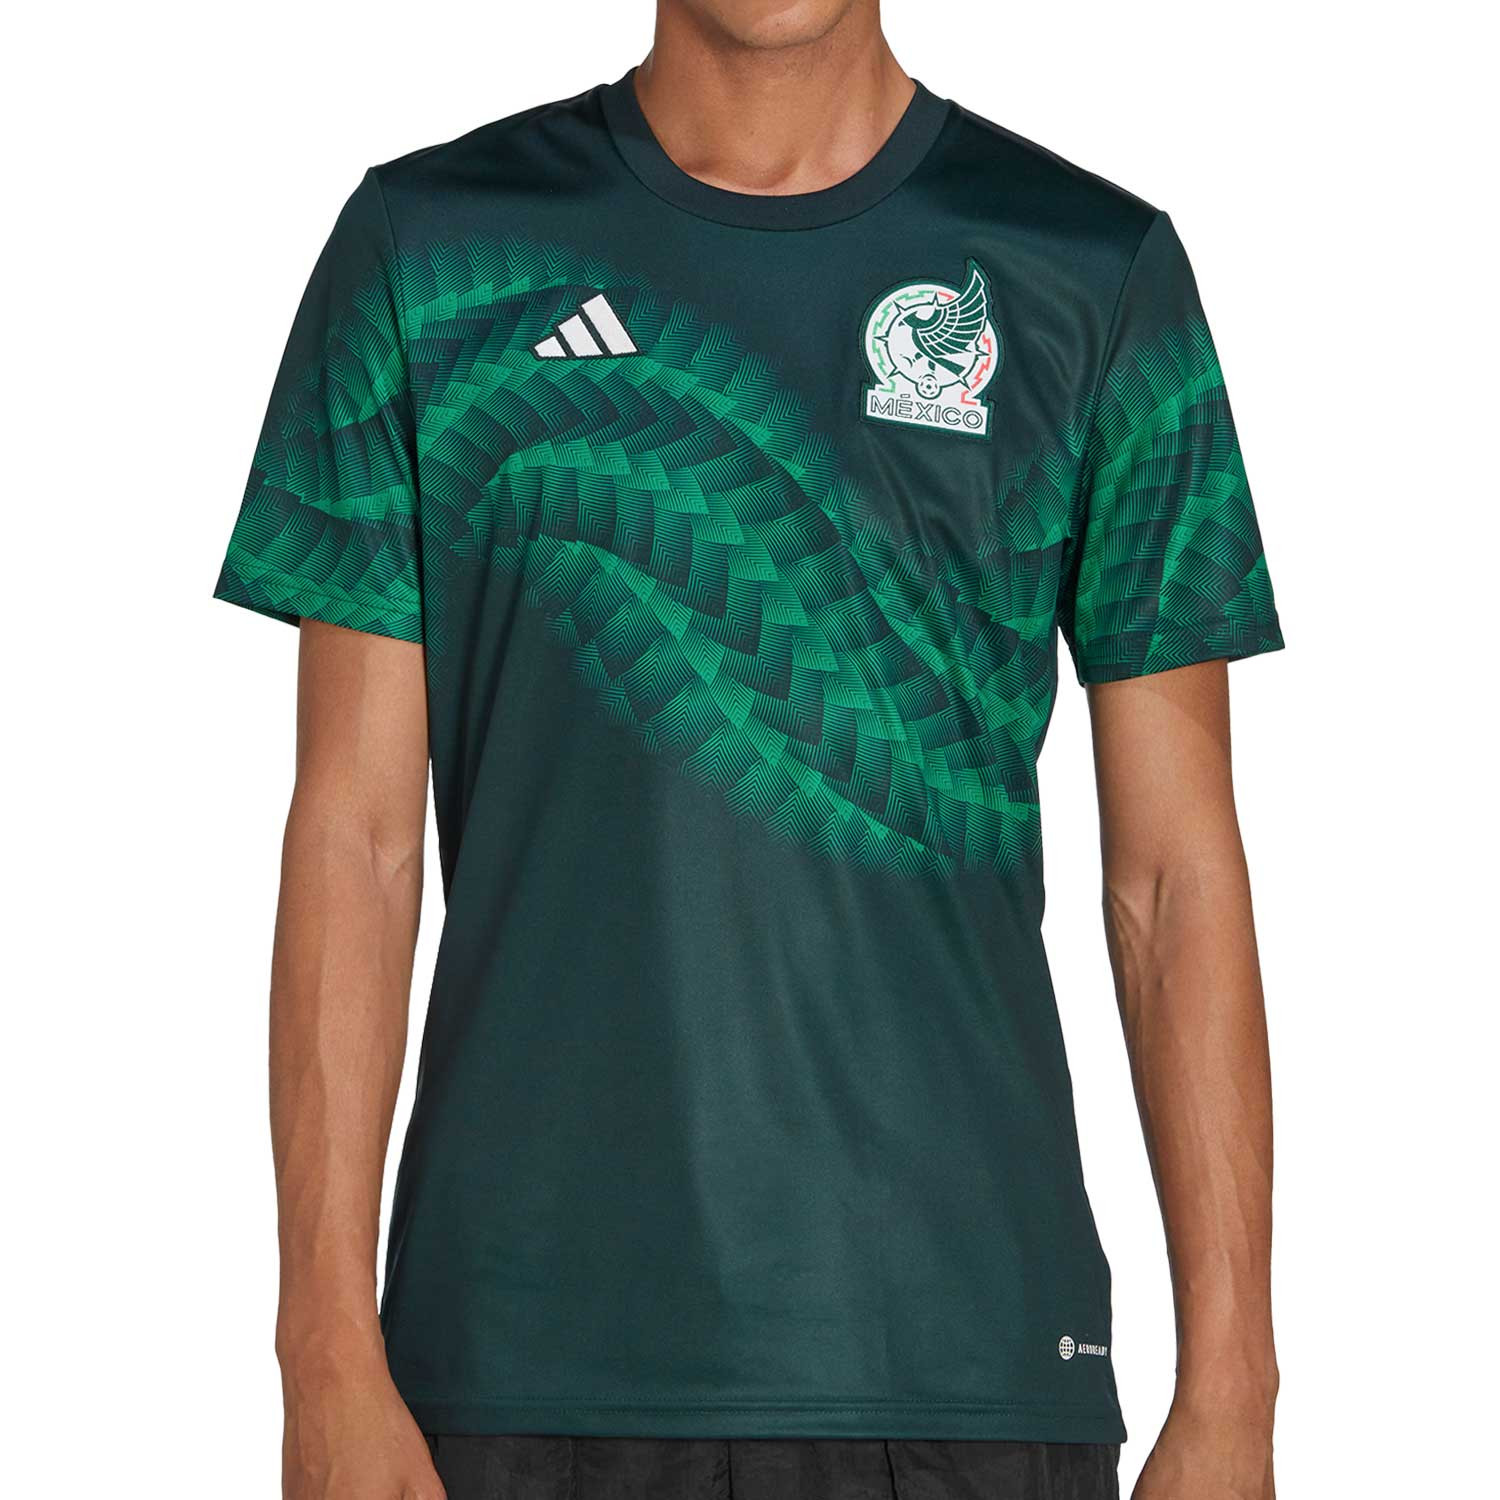 Estas son las camisetas de la Selección Mexicana en color negro